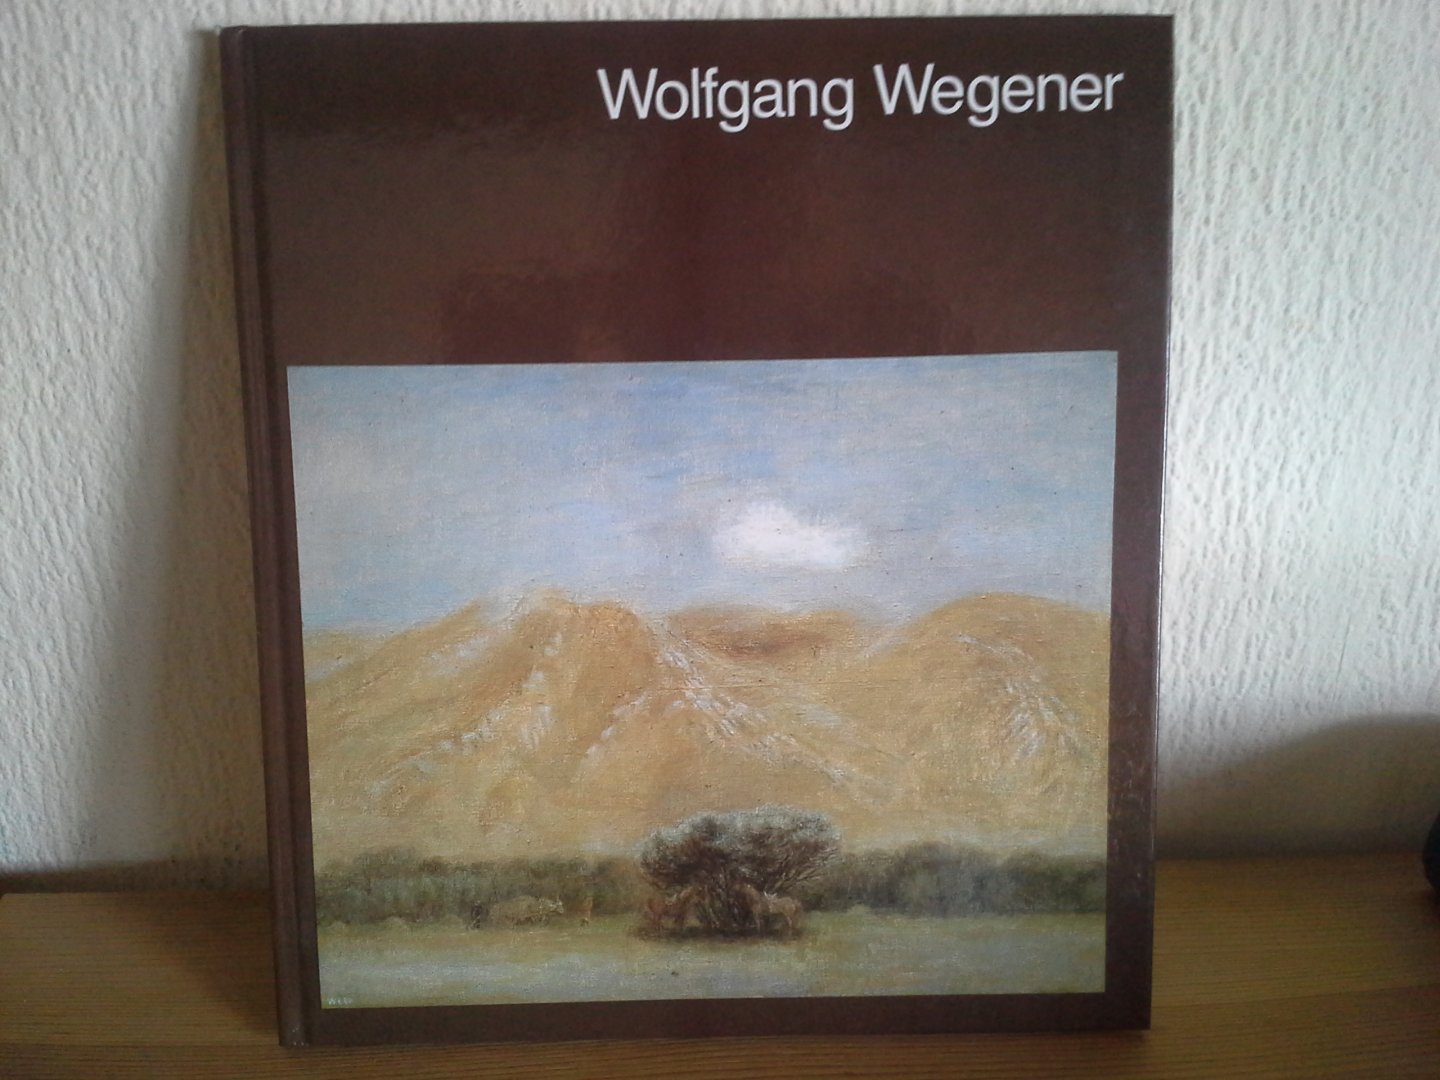 KLAIS WEIDNER - WOLFGANG WEGENER